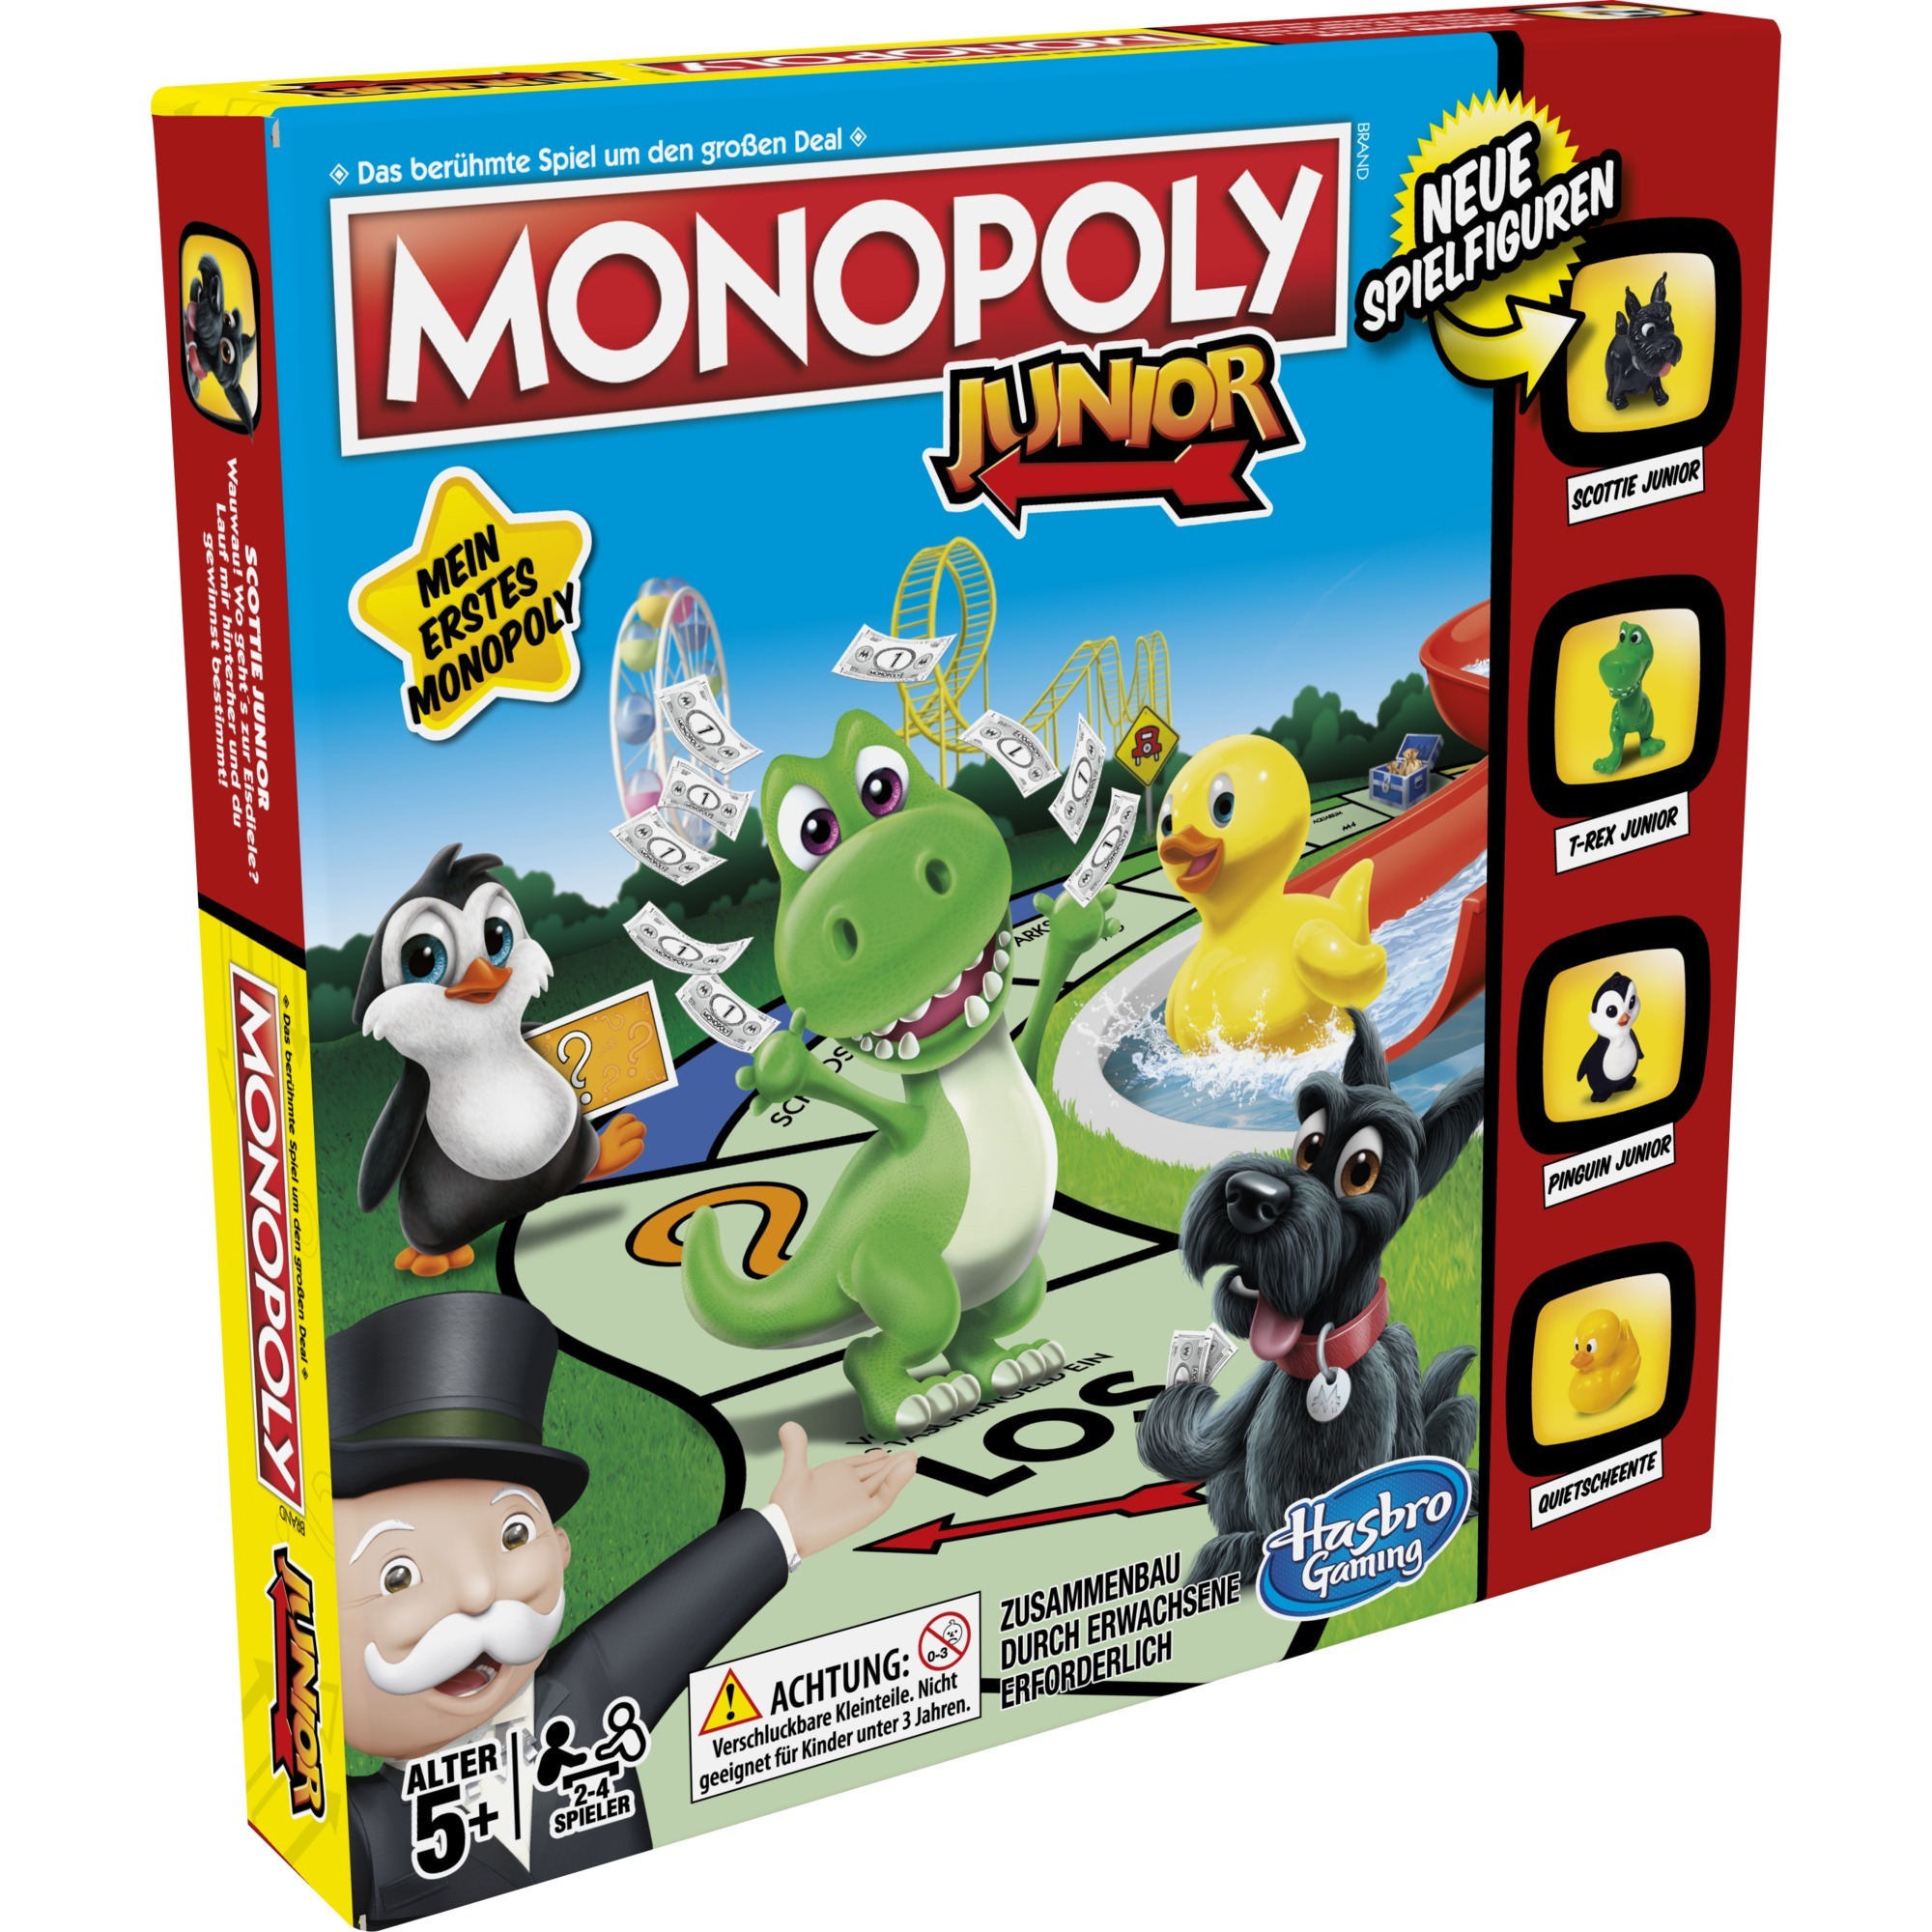 Image of Alternate - Monopoly Junior, Brettspiel online einkaufen bei Alternate